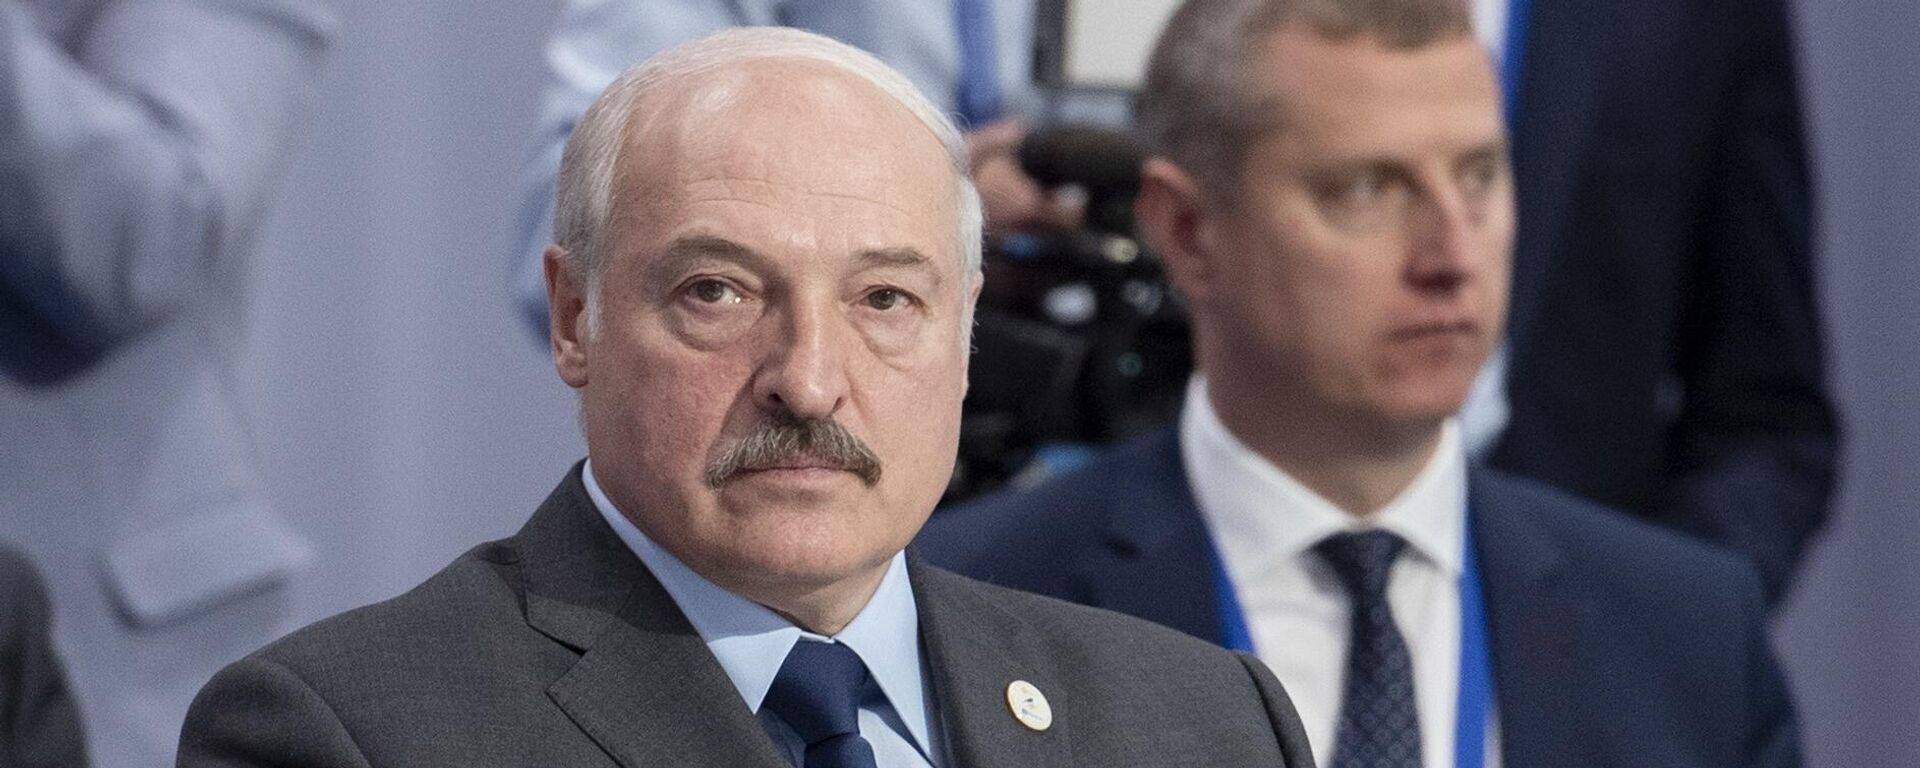 Aleksandr Lukashenko, presidente de Bielorrusia - Sputnik Mundo, 1920, 02.04.2021